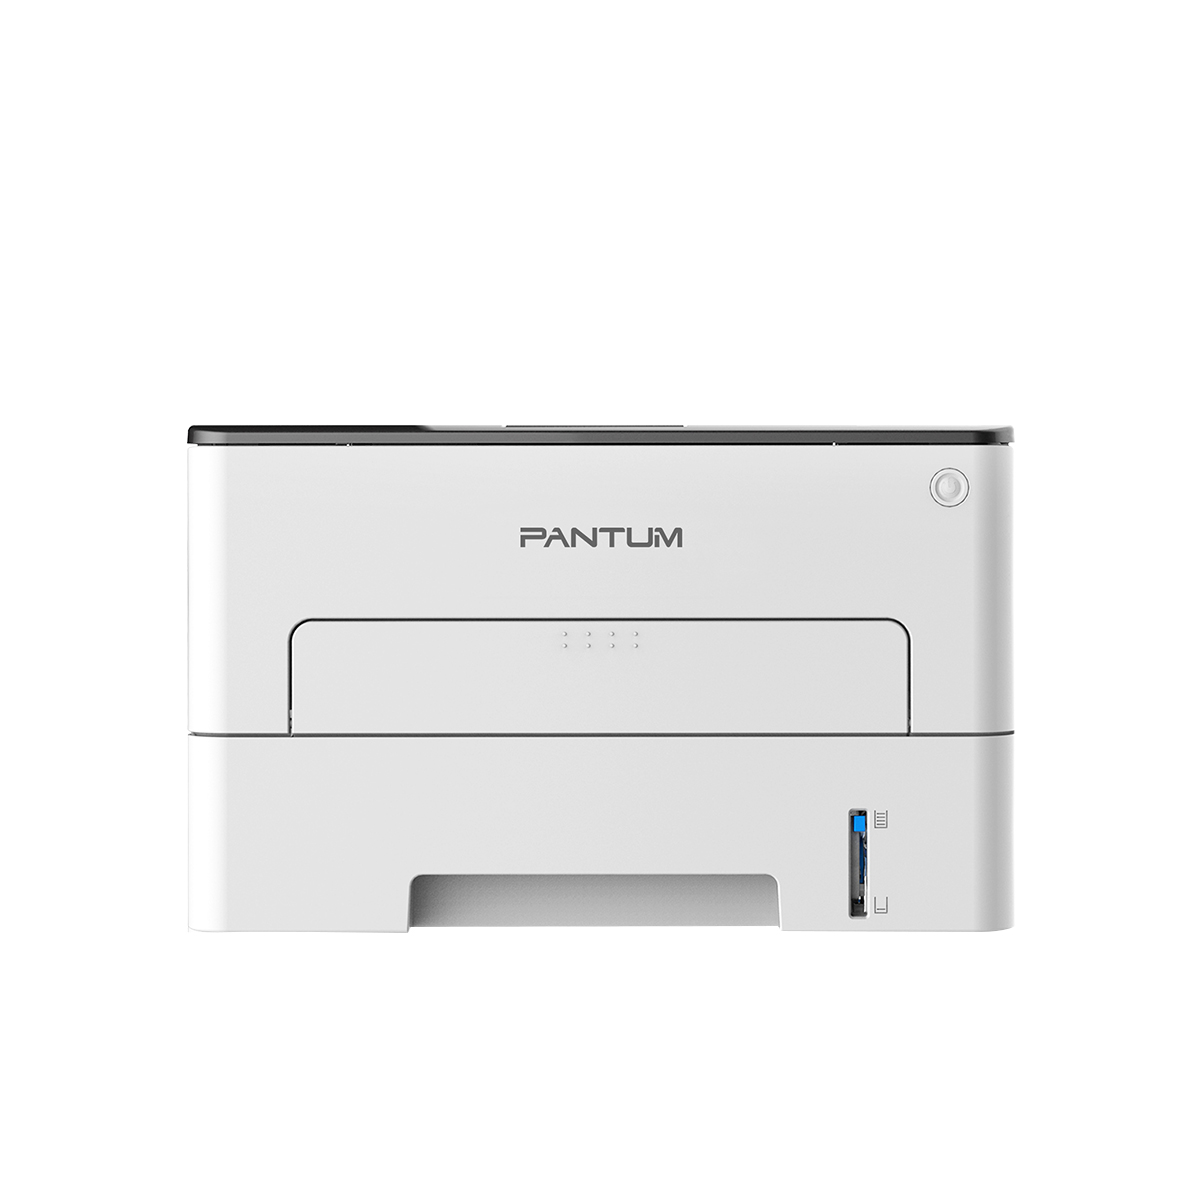 Принтер лазерный Pantum P3010D, черно-белая печать, 30 стр/мин, 1200 x 1200 dpi, 128Мб RAM, USB